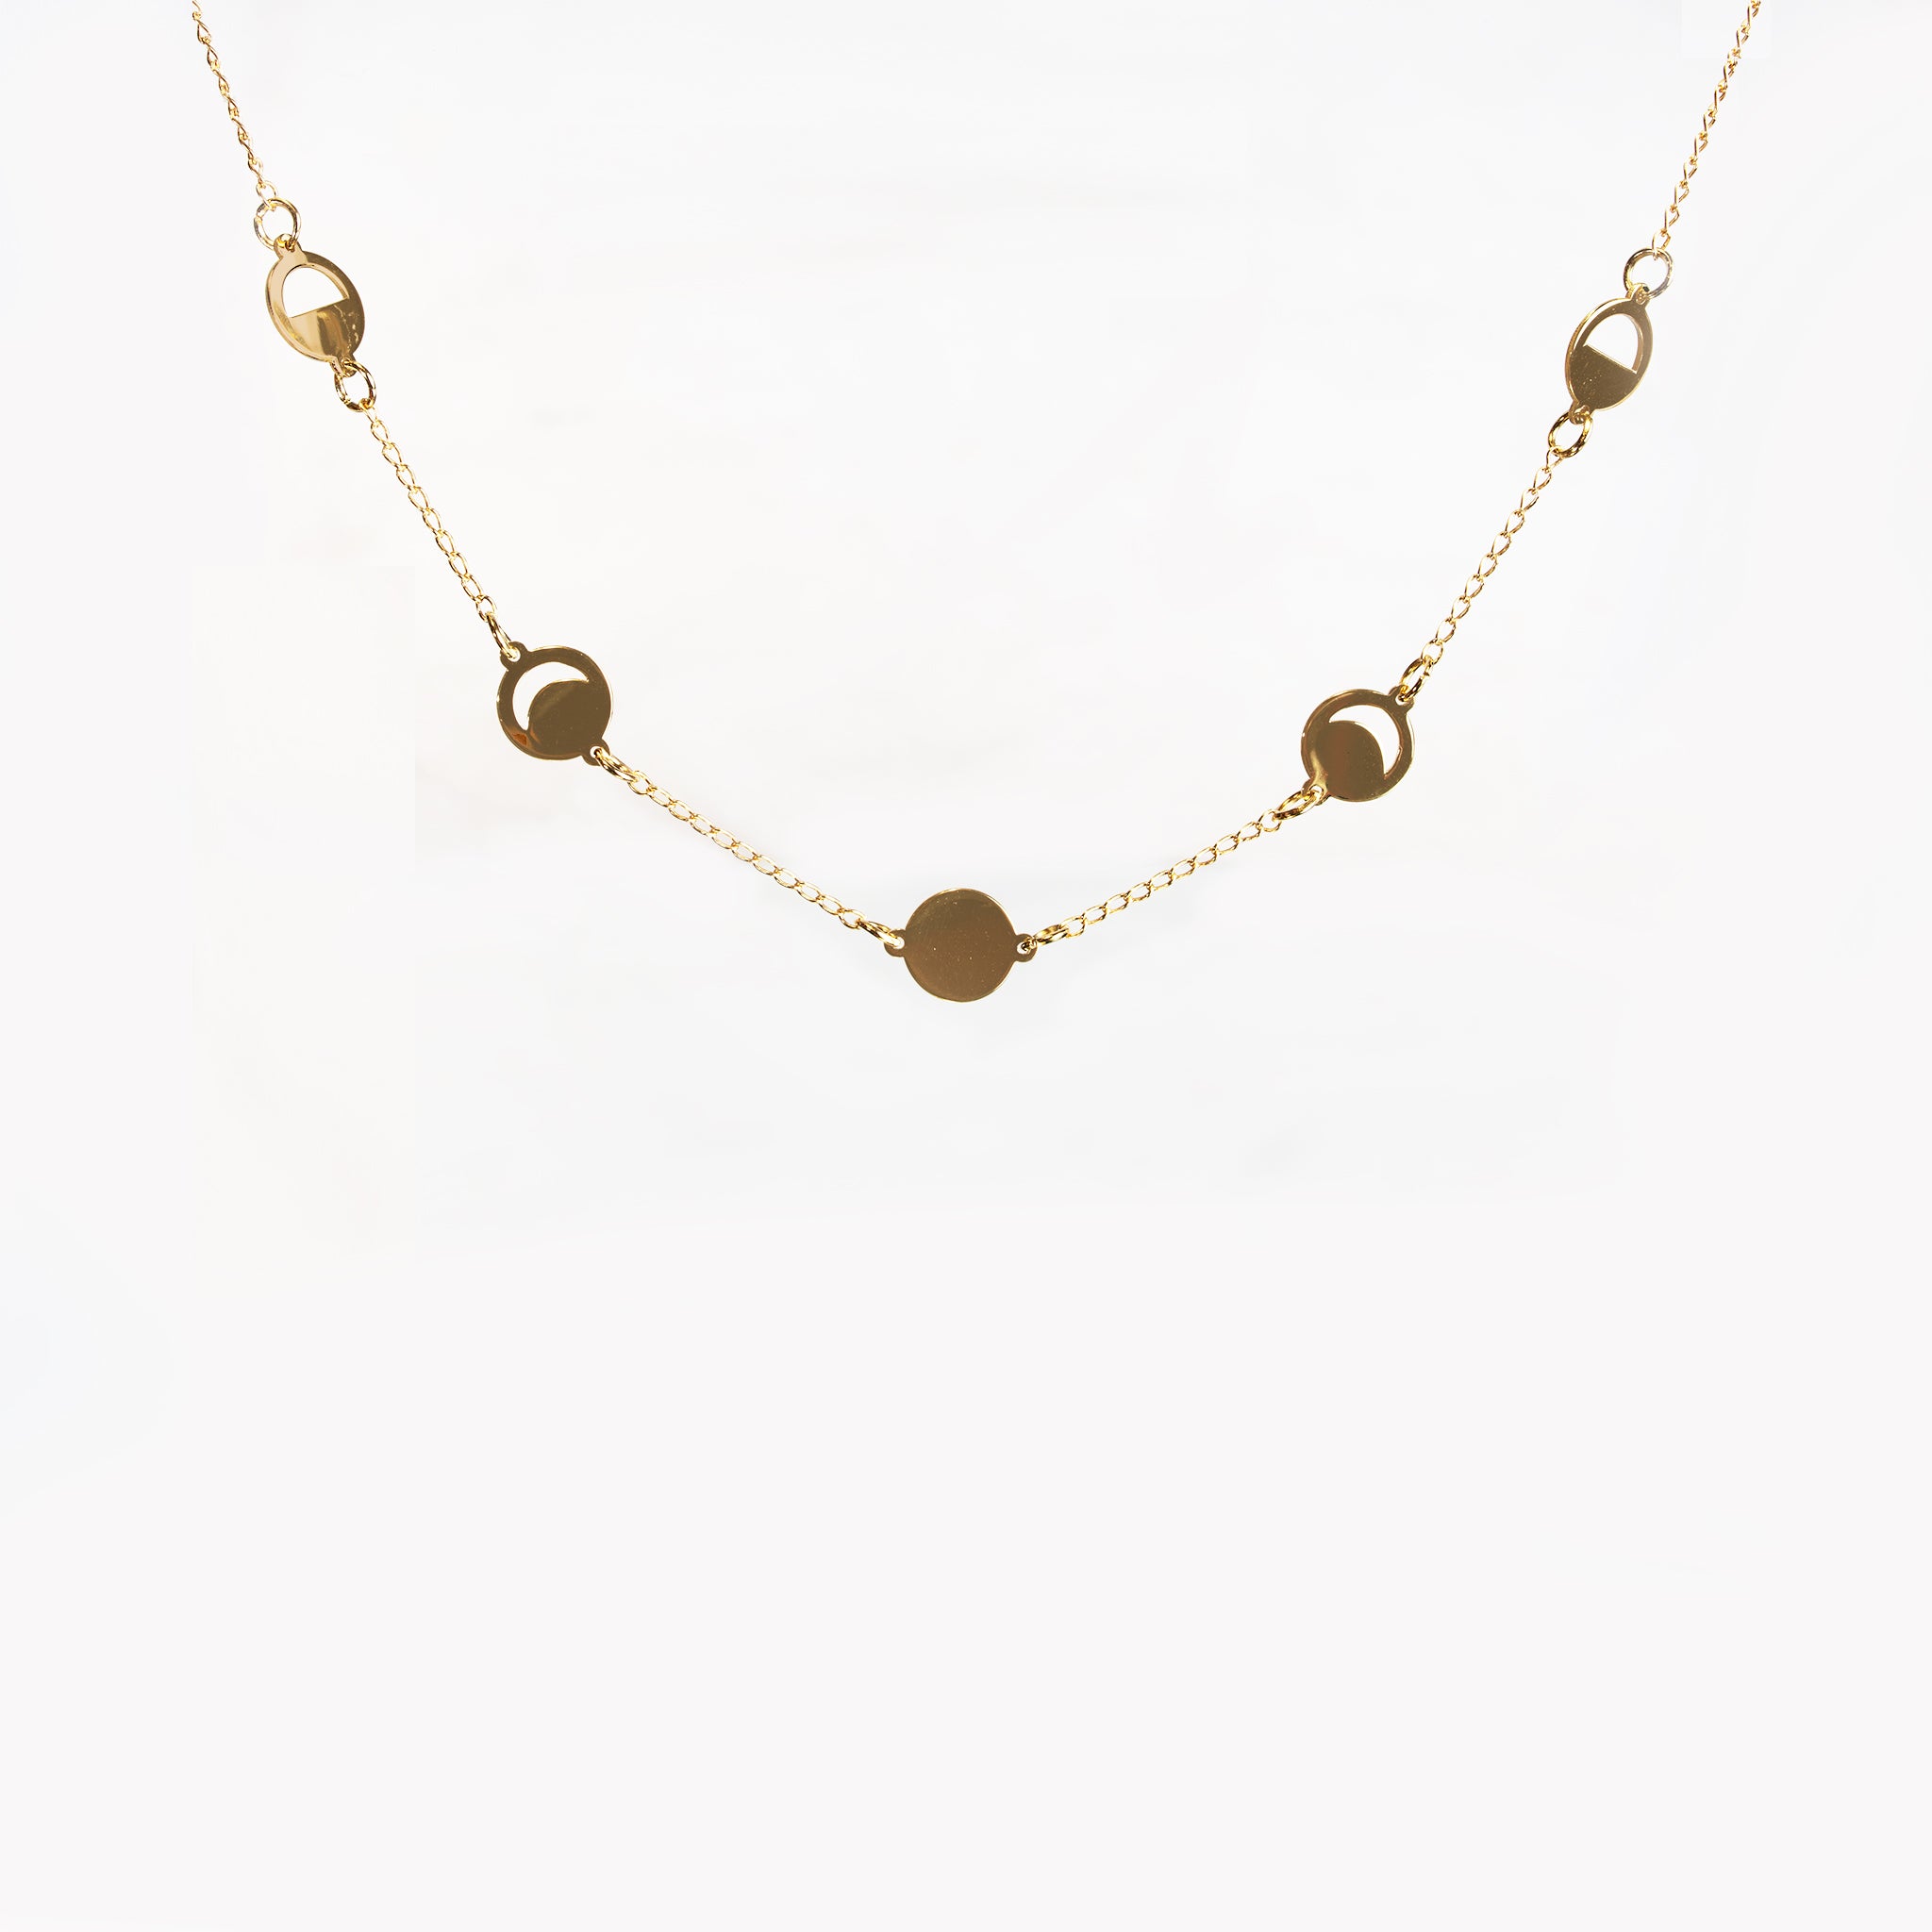 Millié Jewelry - Millié Jewelry - Luna Choker Necklace - Collares - Diseño Mexicano - Hecho en México